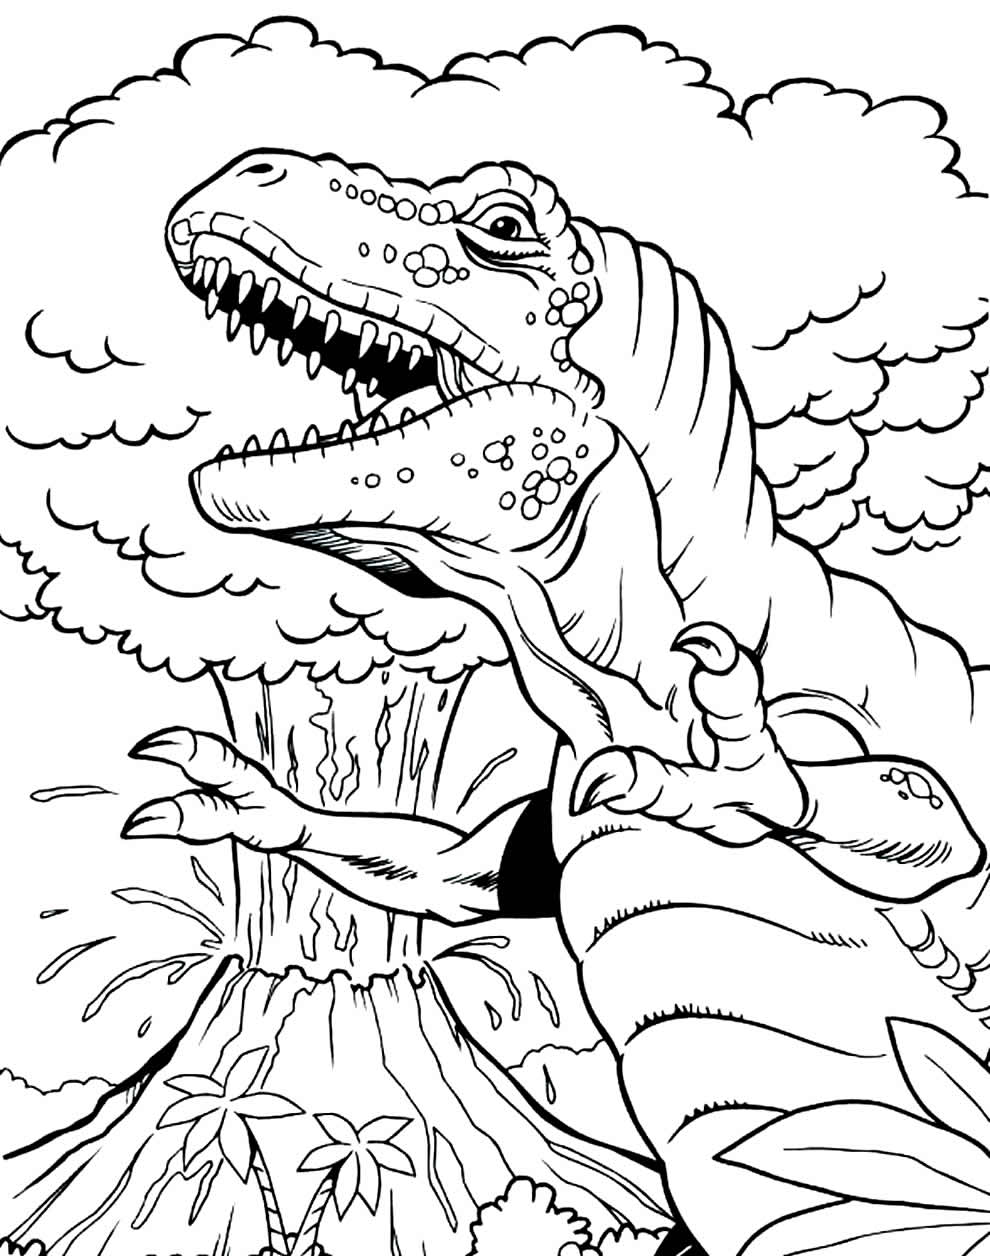 Desenhos para colorir de Dinossauros para imprimir - Dinossauros - Coloring  Pages for Adults